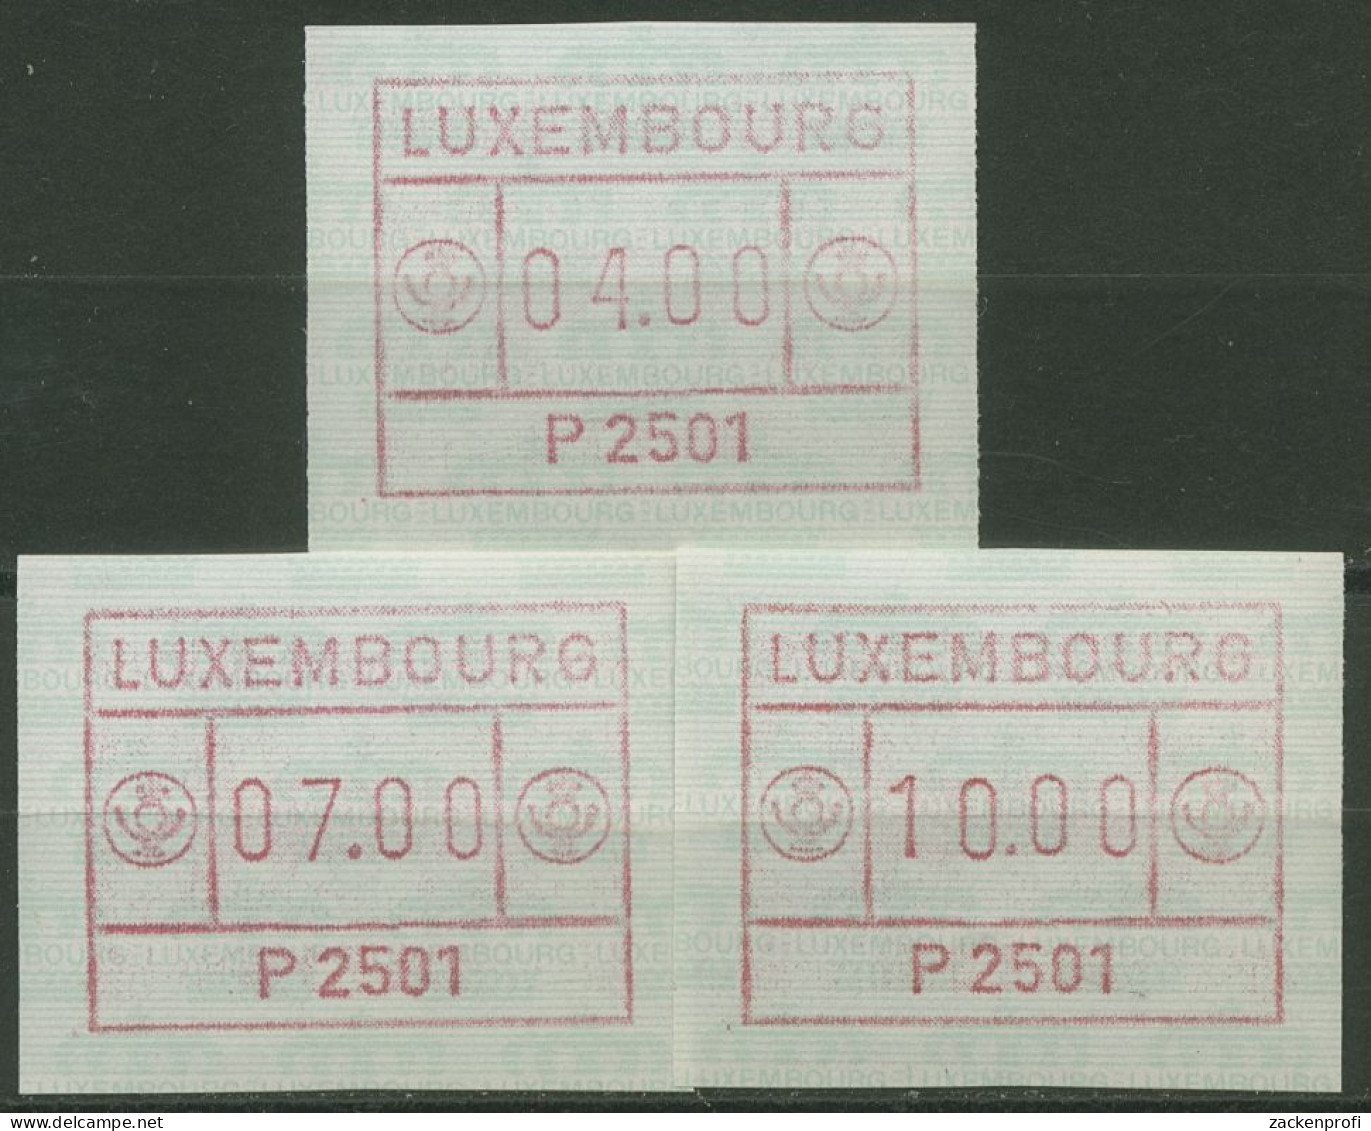 Luxemburg 1983 Automatenmarke Automat P 2501 Satz 1.1.1 B S1 Postfrisch - Postage Labels